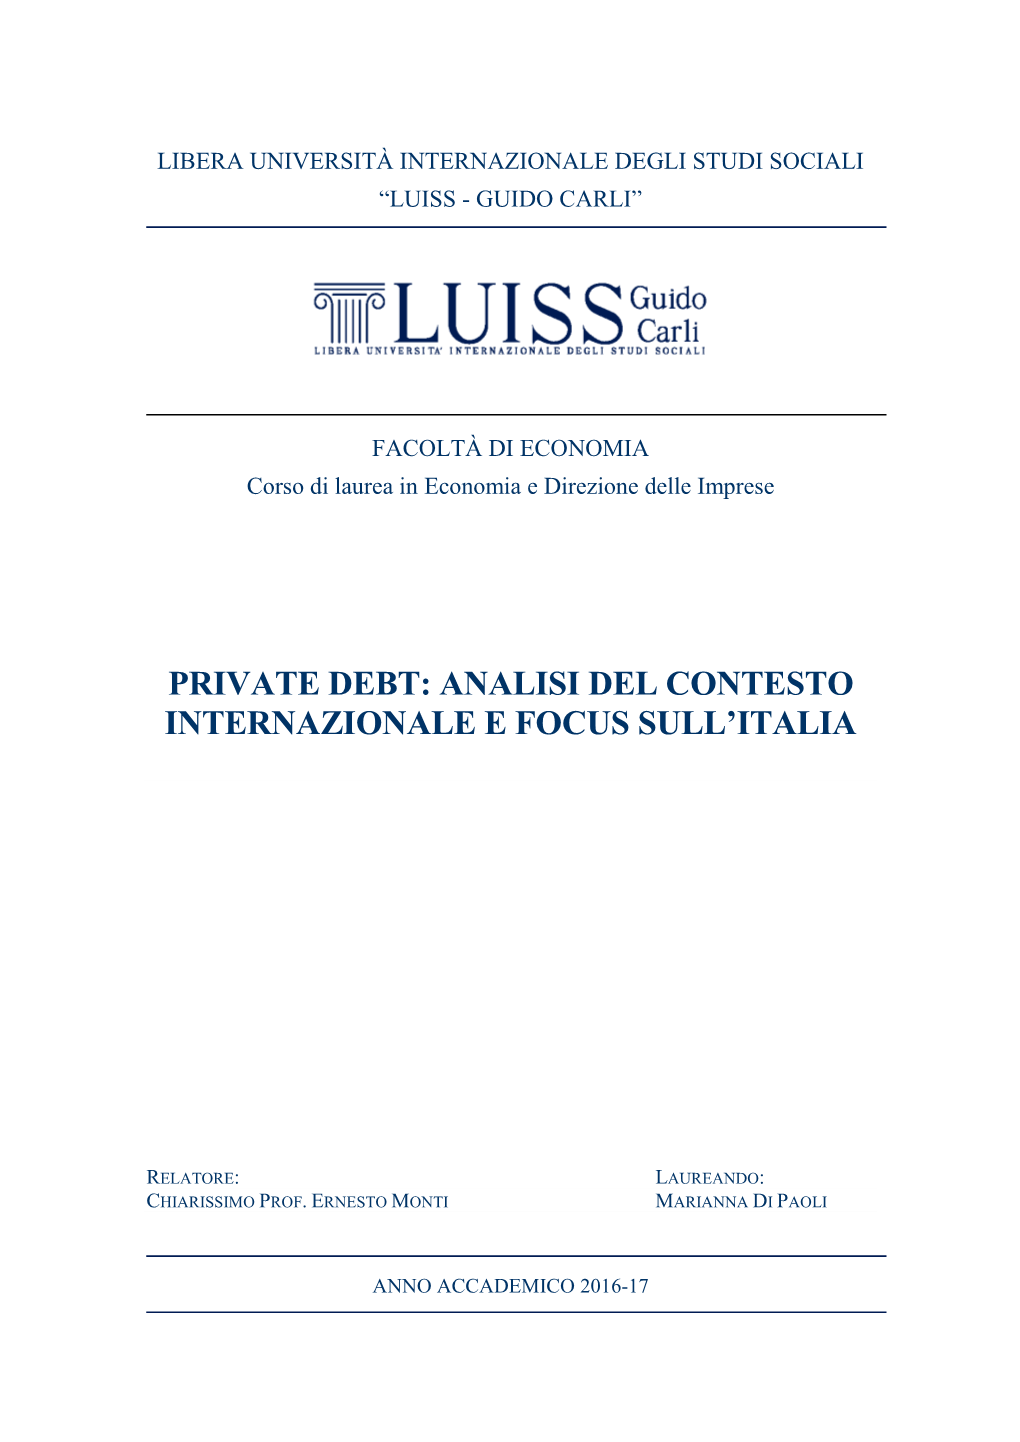 Private Debt: Analisi Del Contesto Internazionale E Focus Sull’Italia